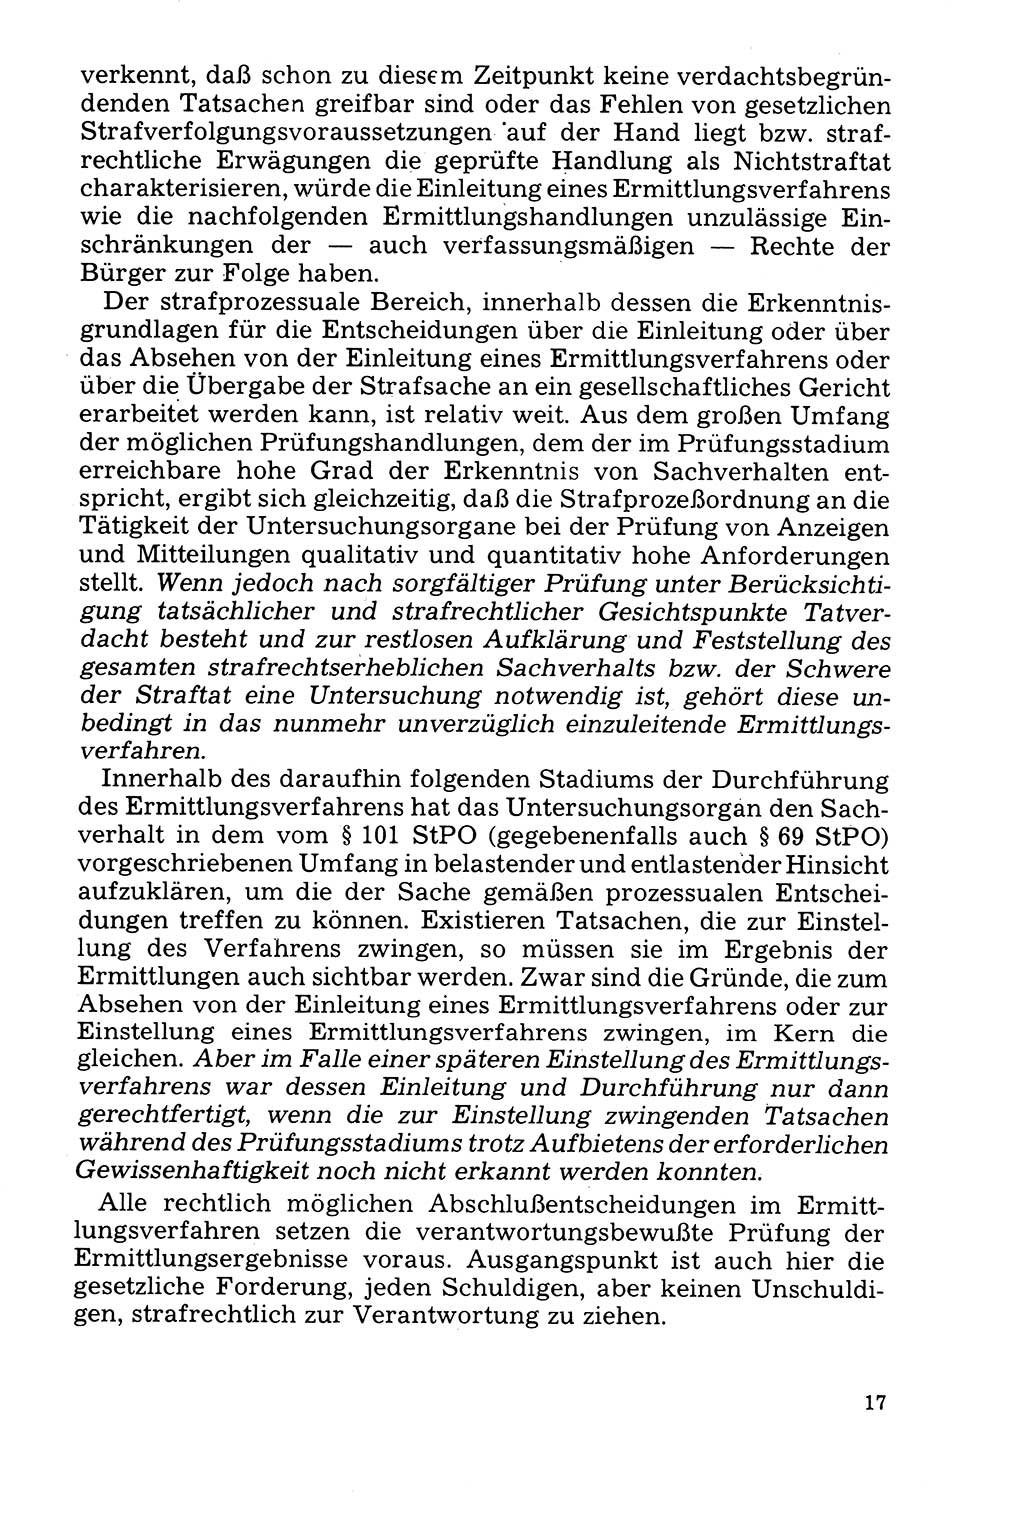 Der Abschluß des Ermittlungsverfahrens [Deutsche Demokratische Republik (DDR)] 1978, Seite 17 (Abschl. EV DDR 1978, S. 17)